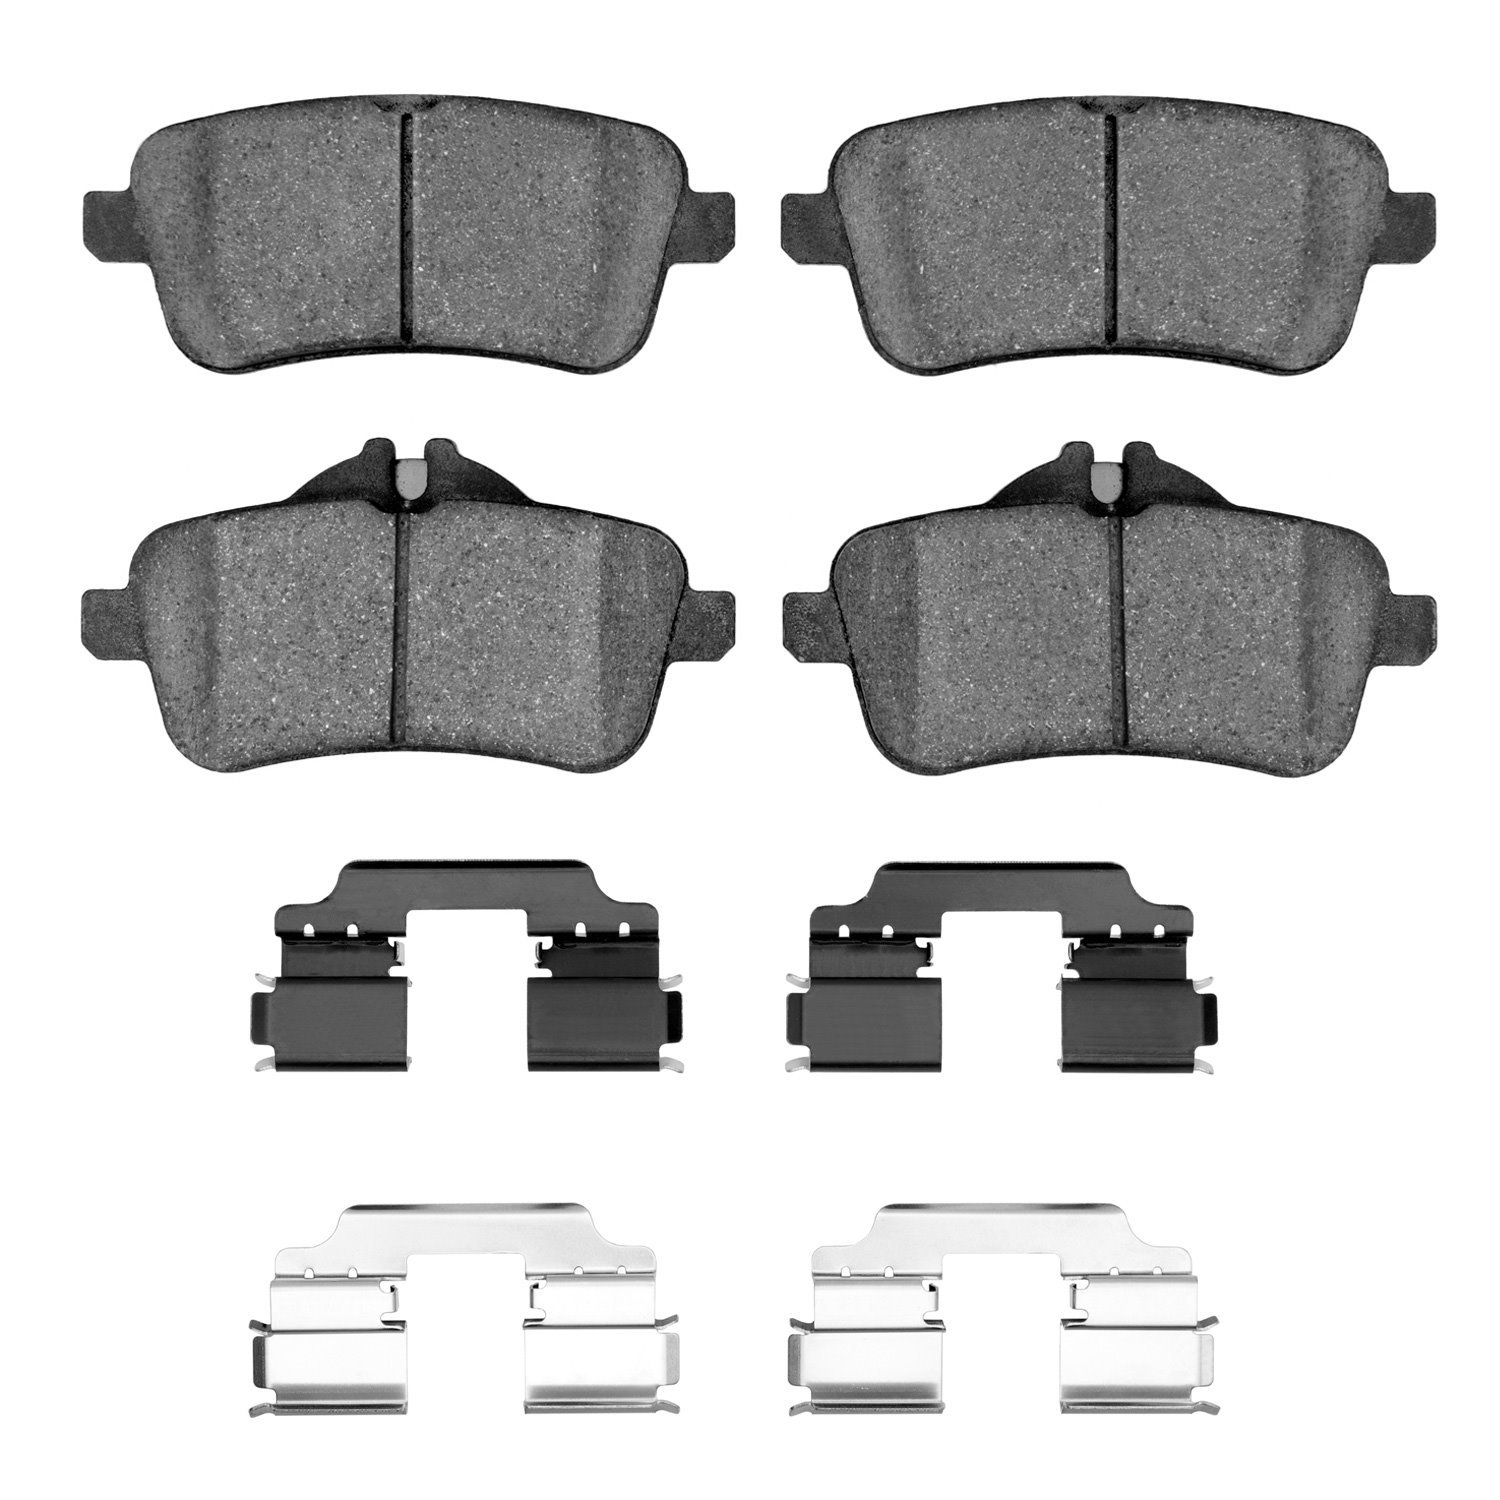 1311-1630-02 3000-Series Semi-Metallic Brake Pads & Hardware Kit, 2012-2018 Mercedes-Benz, Position: Rear